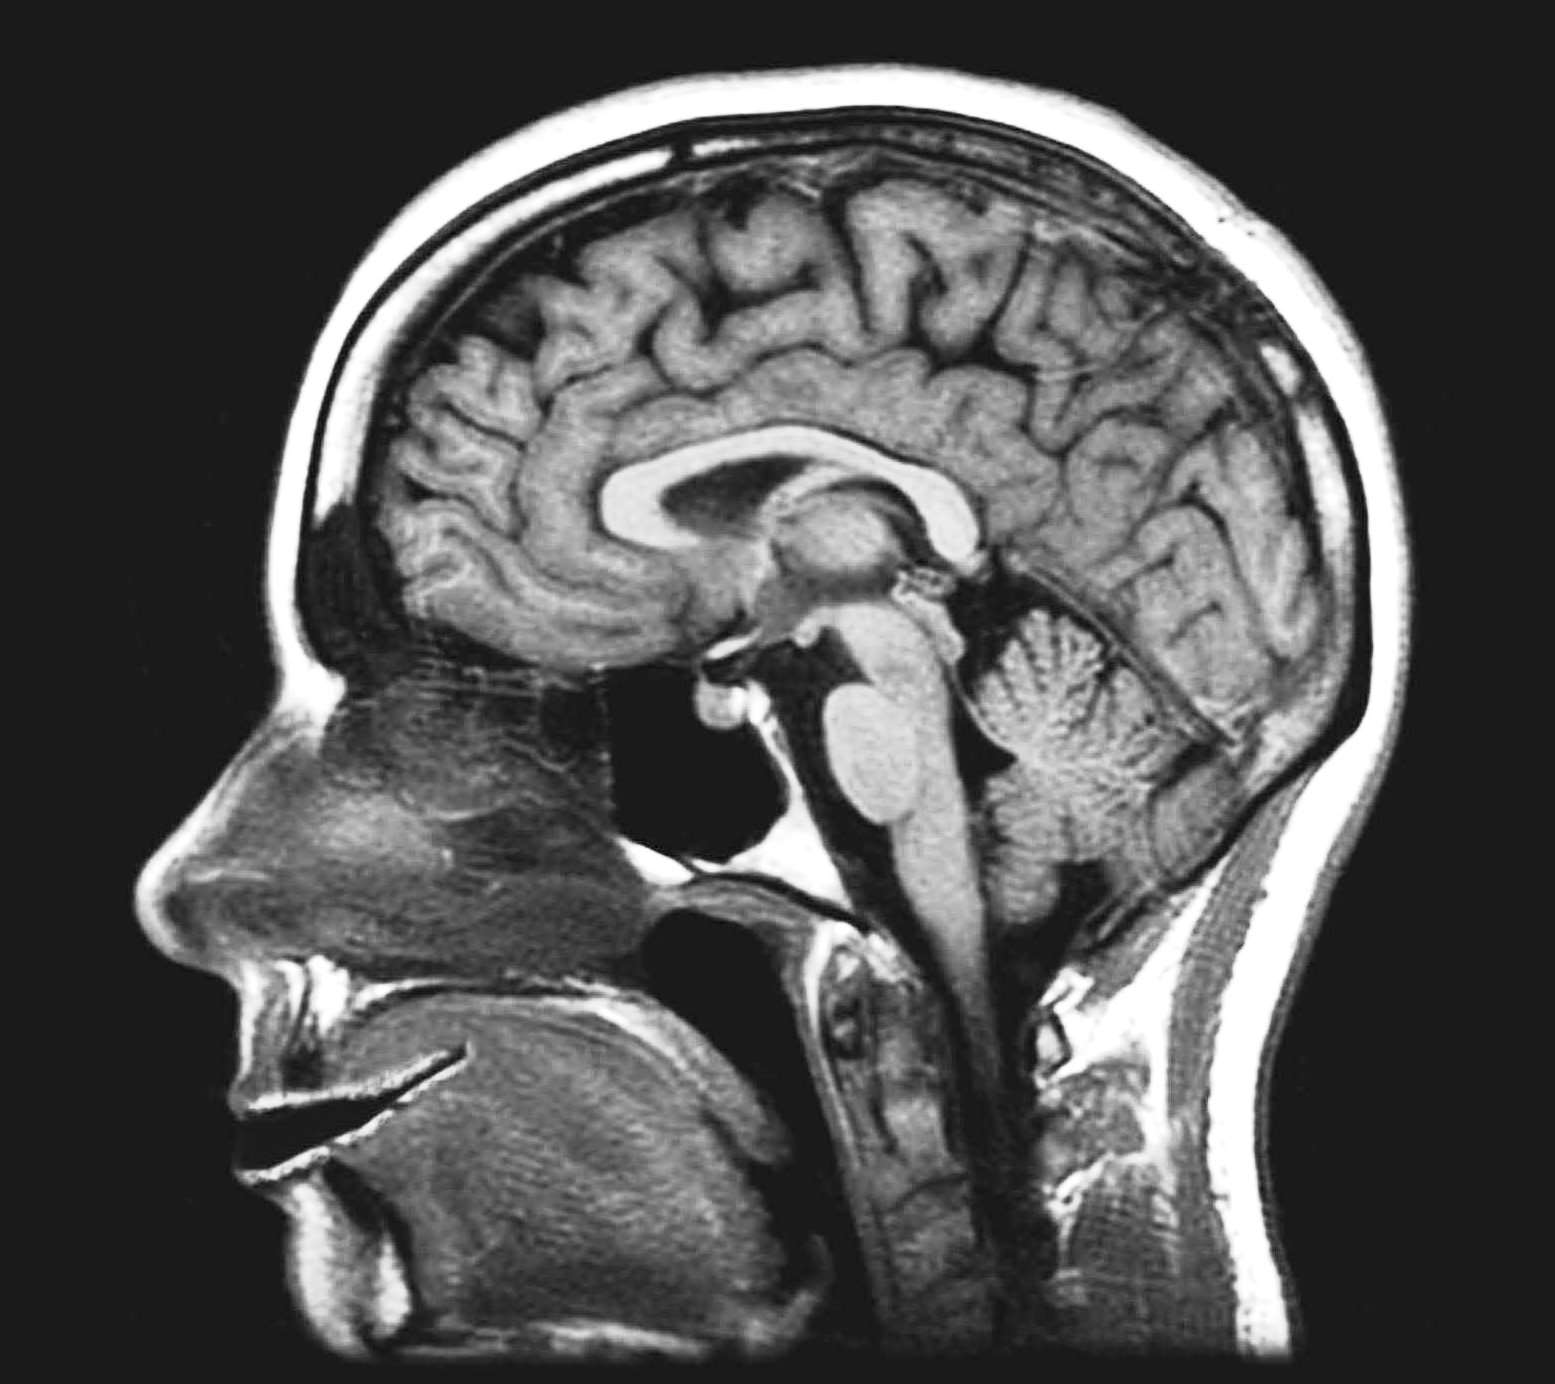 Фото снимок МРТ сосудов головного мозга здорового человека (норма)